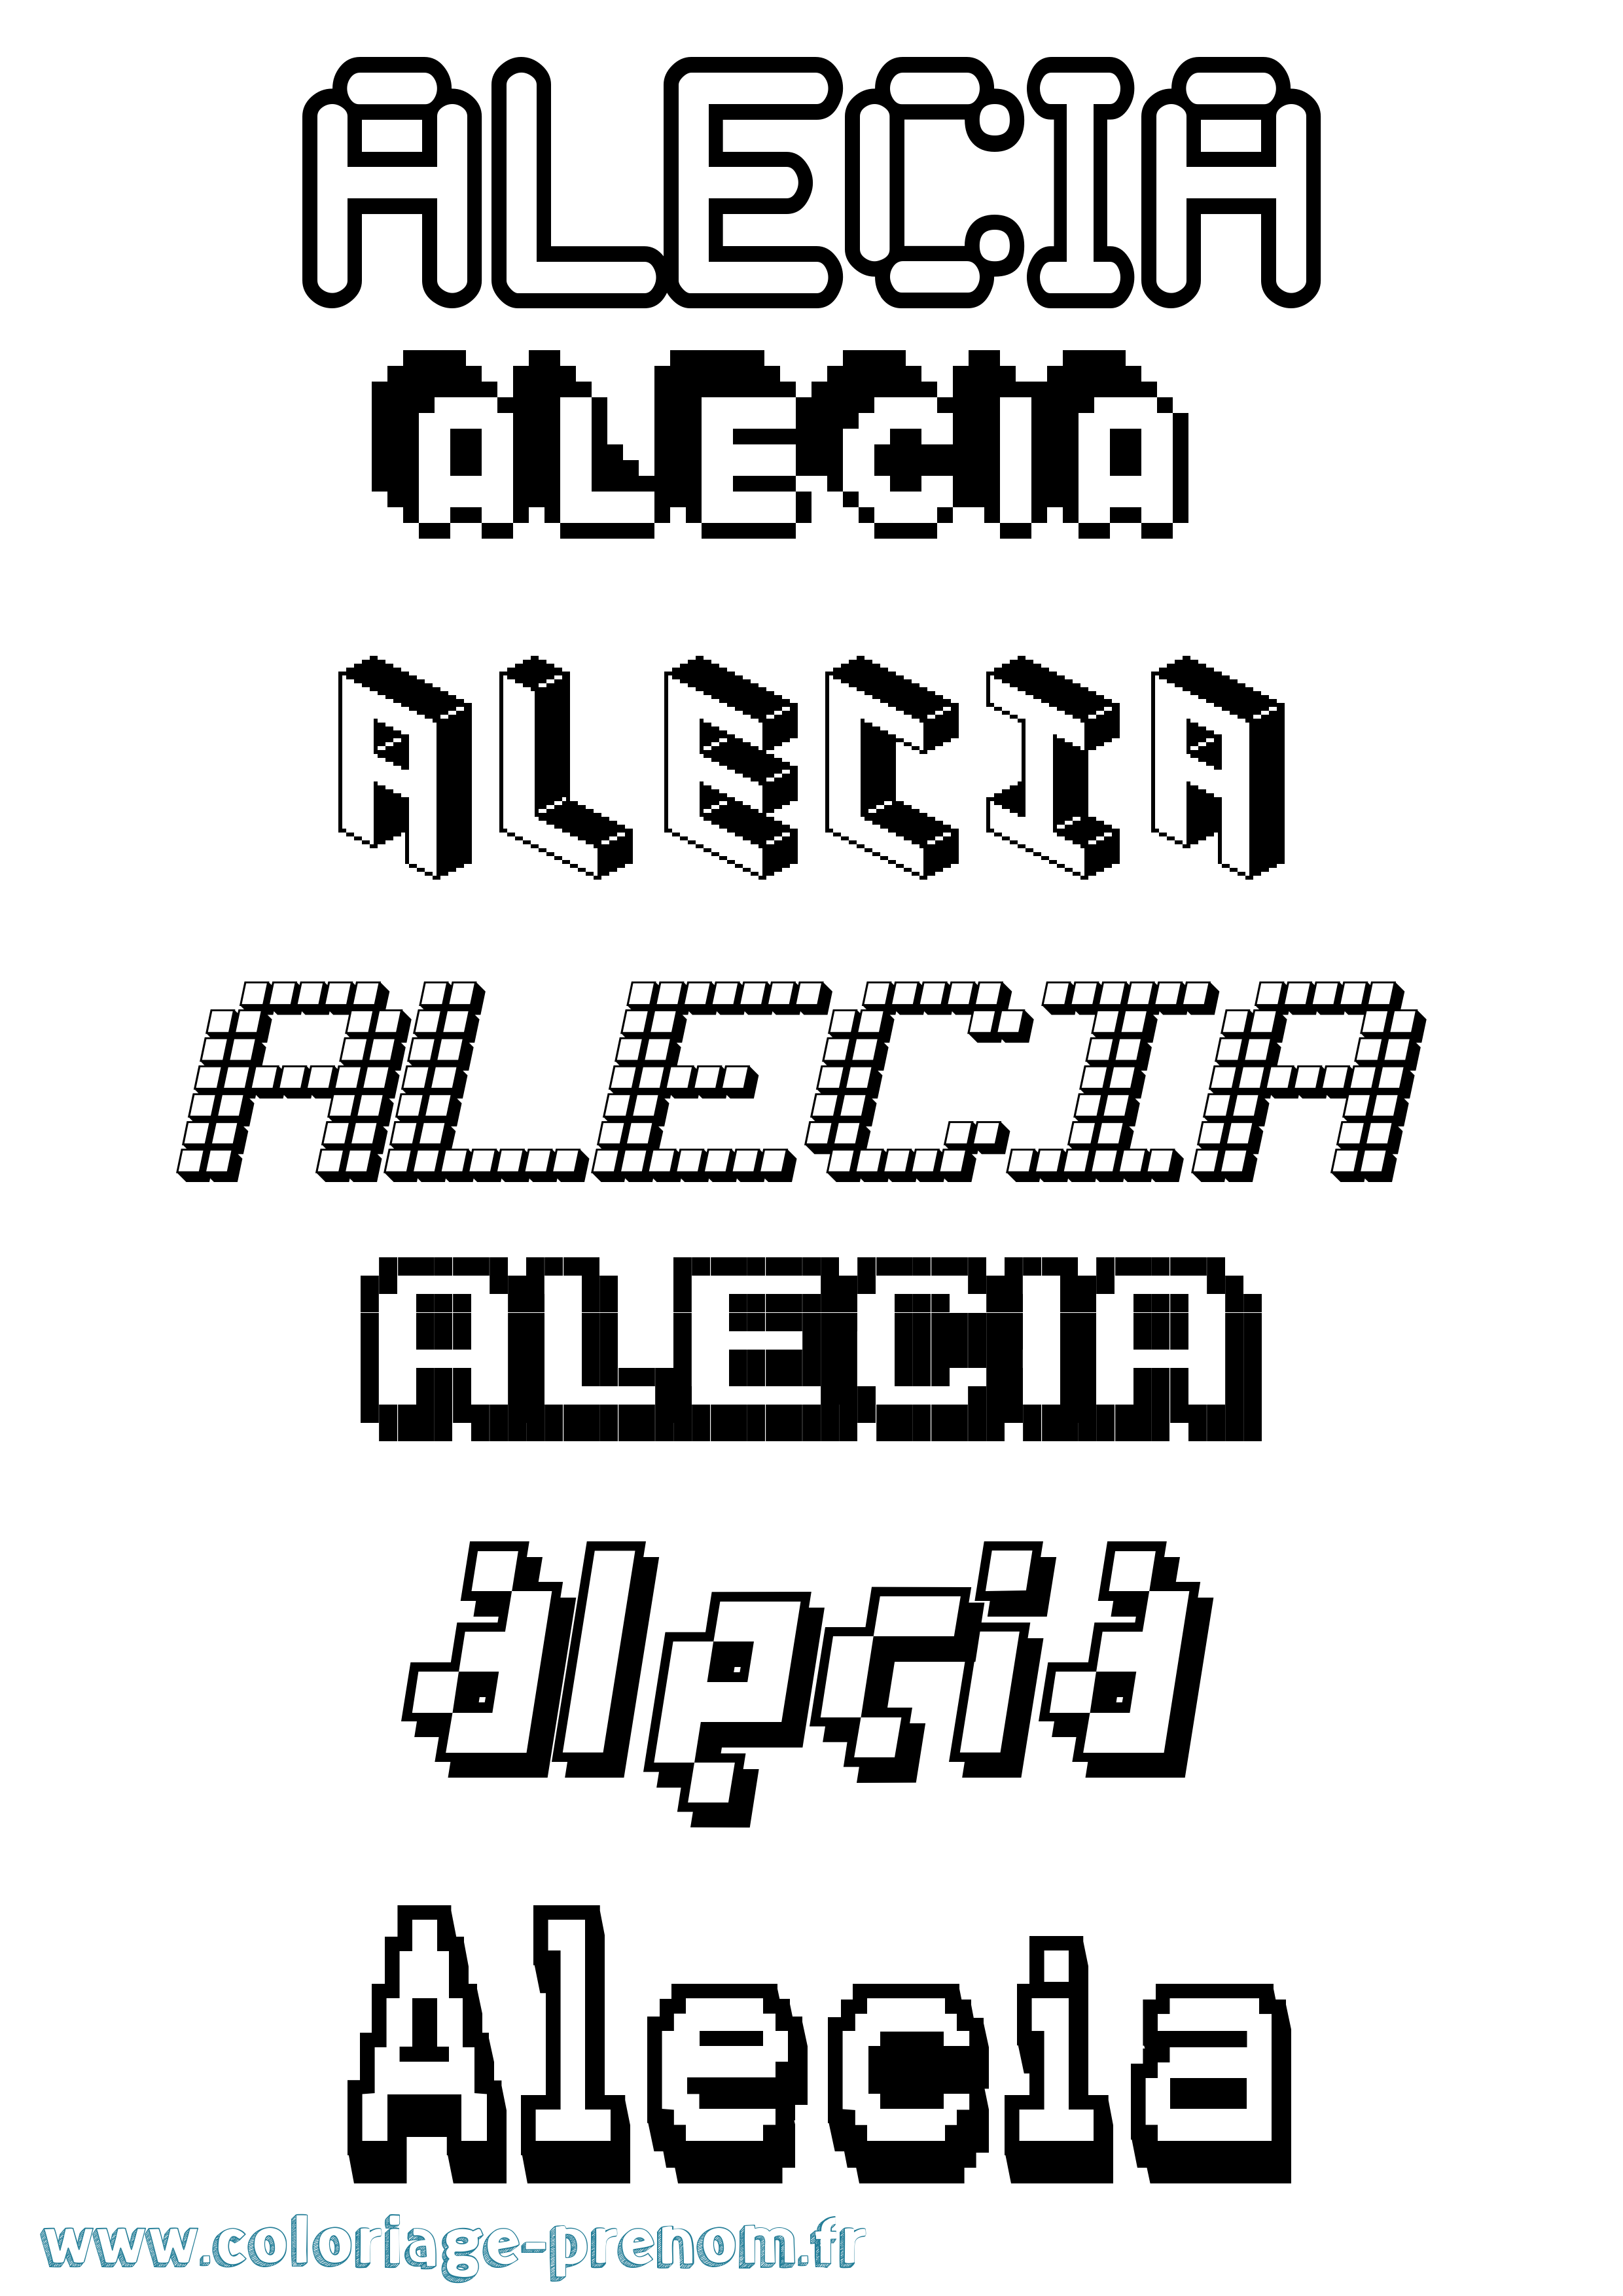 Coloriage prénom Alecia Pixel